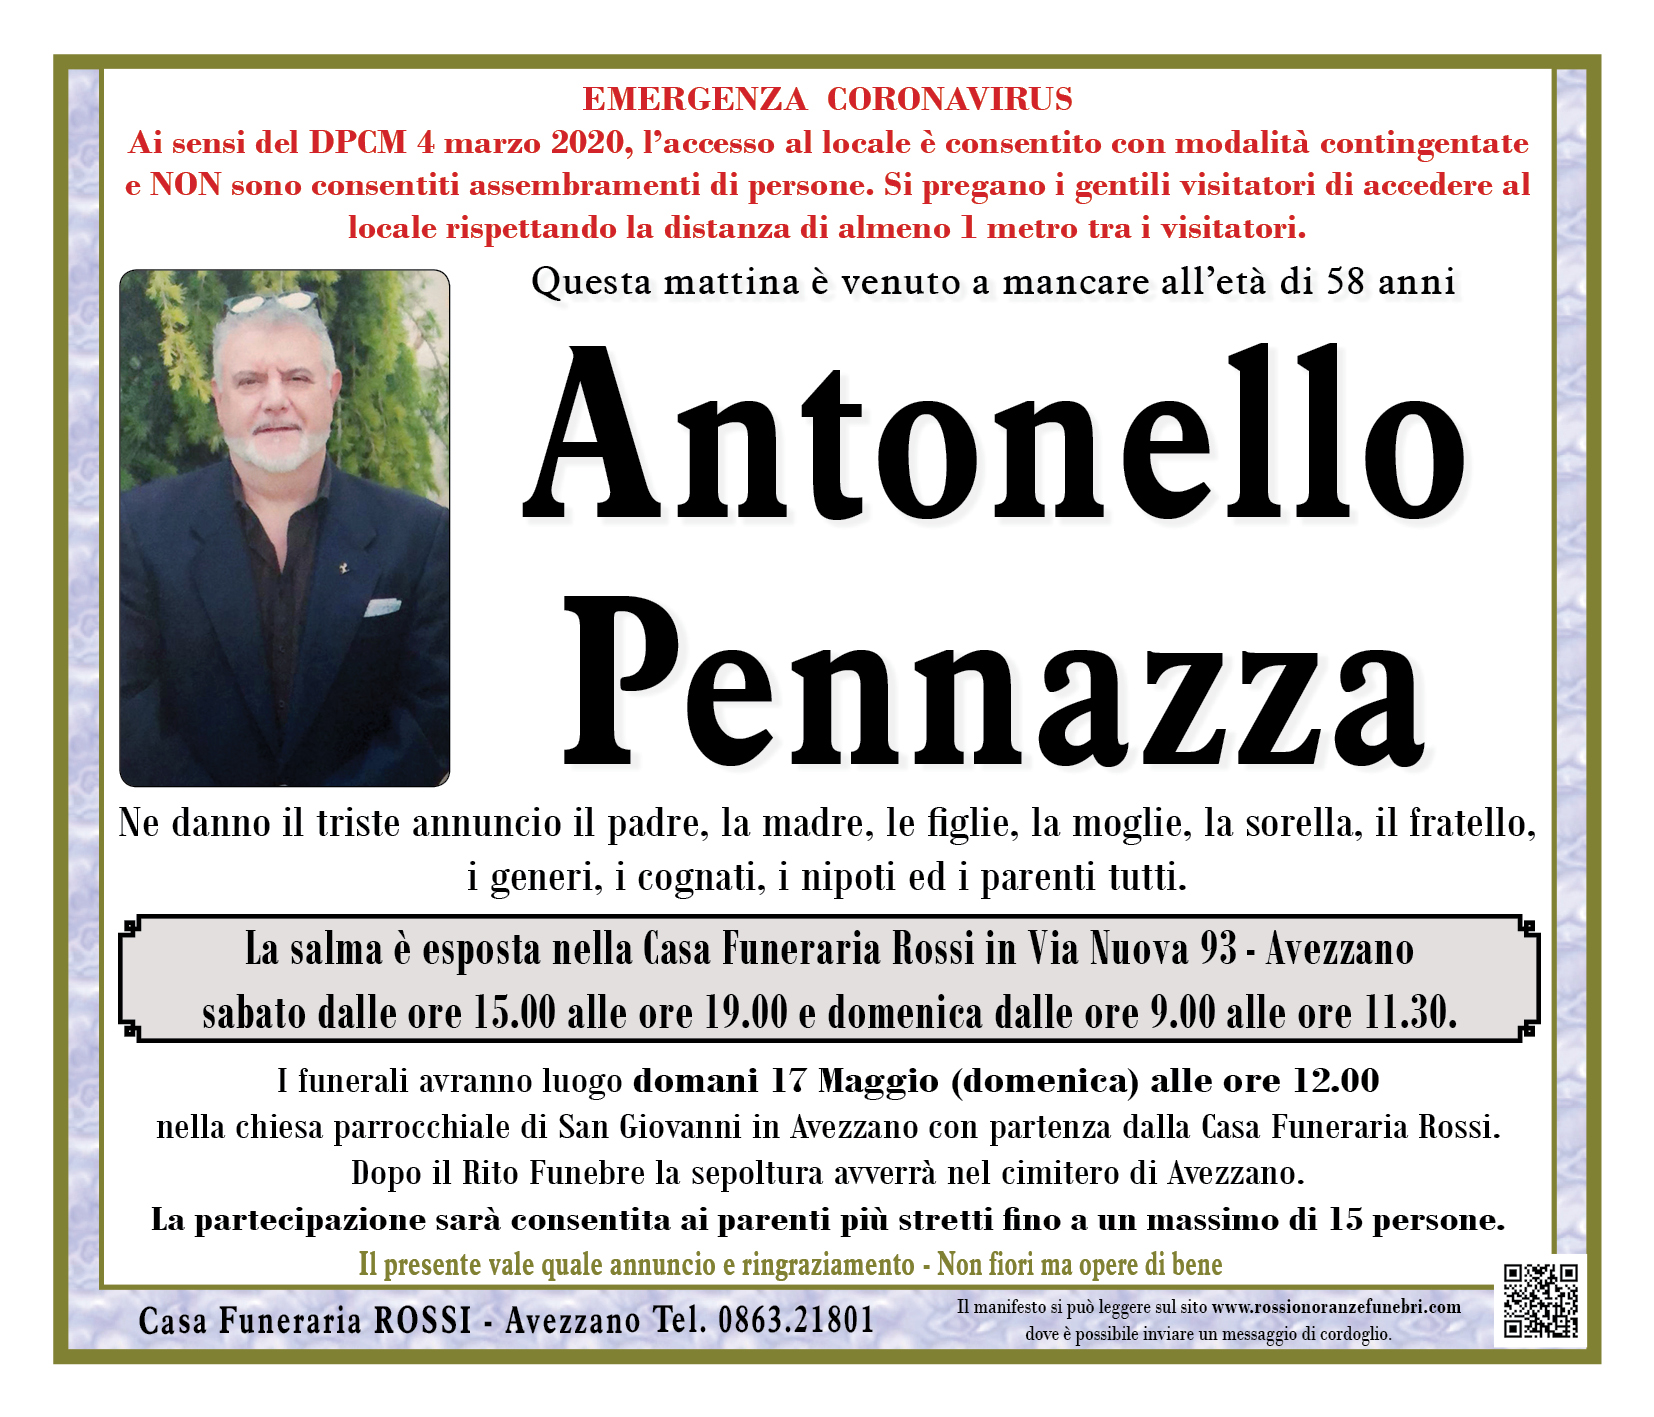 Antonello Pennazza